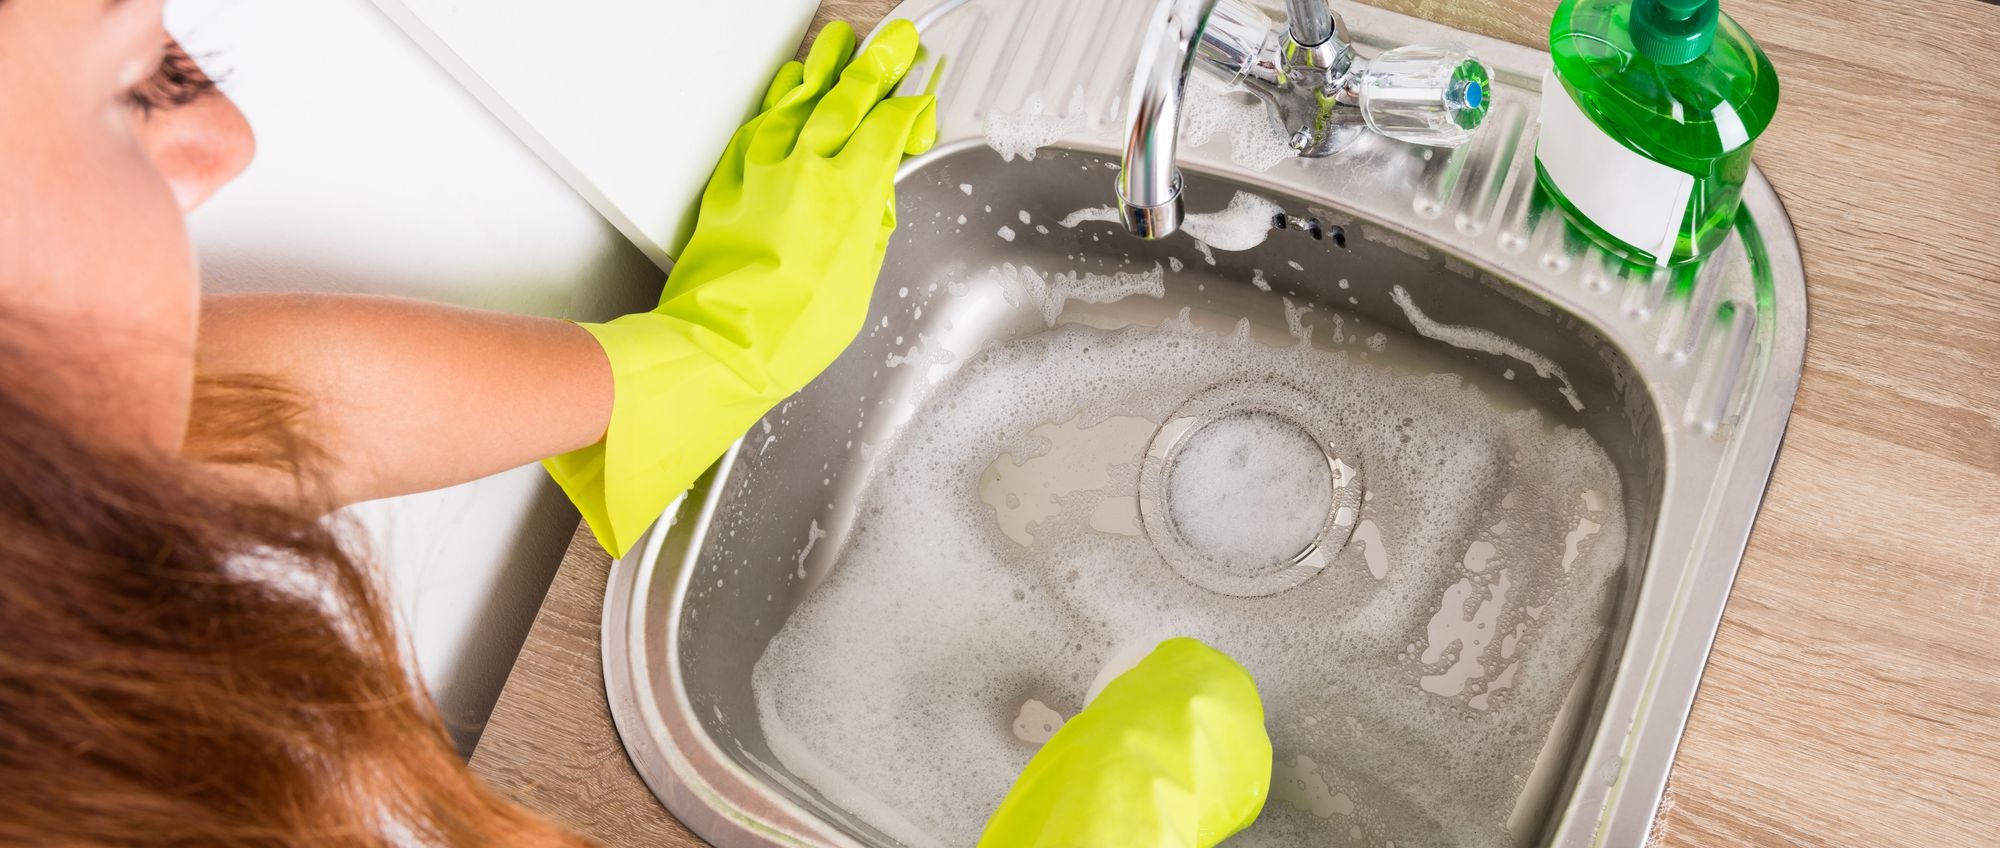 شستن ظرفشویی - تمیز کردن سینک ظرفشویی